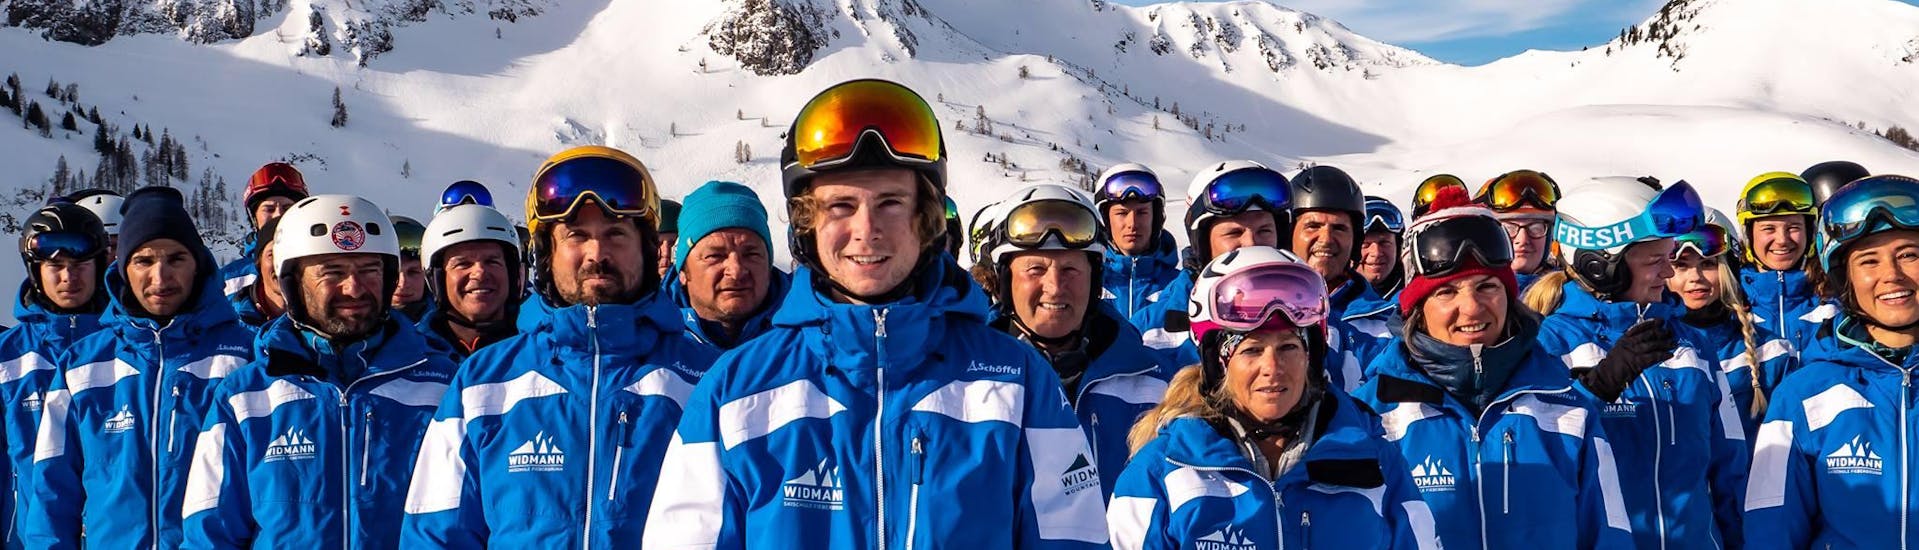 Die Skilehrer der Skischule Fieberbrunn Widmann Mountain Sports die unter anderem auch den Skikurs für Erwachsene - Anfänger unterrichten, posieren gemeinsam für ein Gruppenfoto.